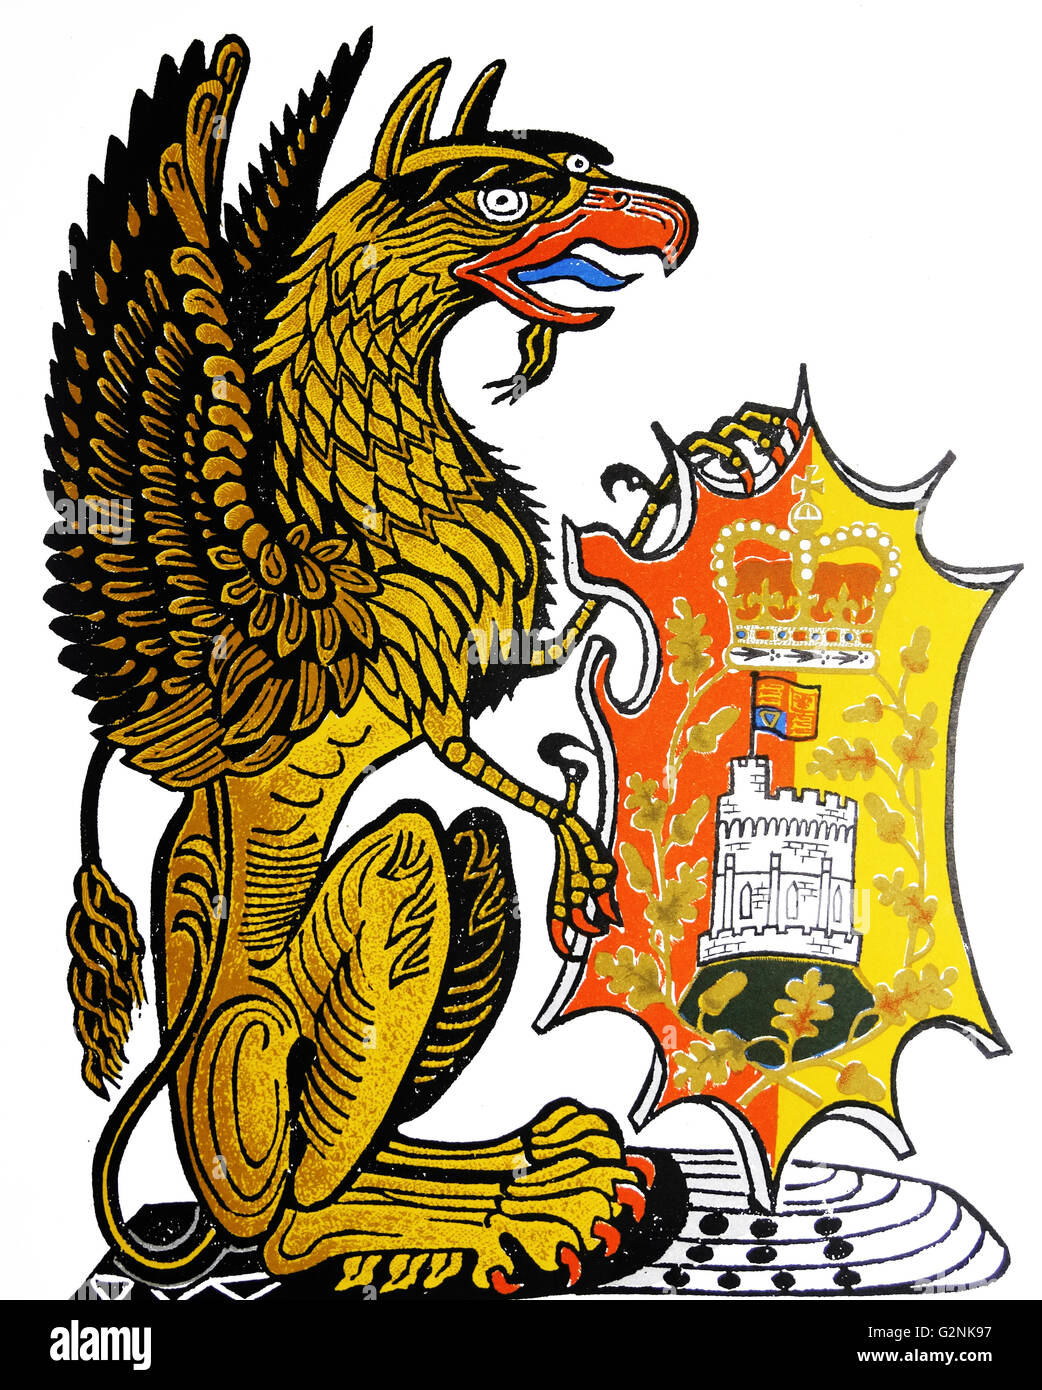 La custodia Griffin di Edward III uno dei "la regina delle bestie". Disegnato da Edward Bawden CBE RA (1903 - 1989) era un inglese un artista grafico. Foto Stock